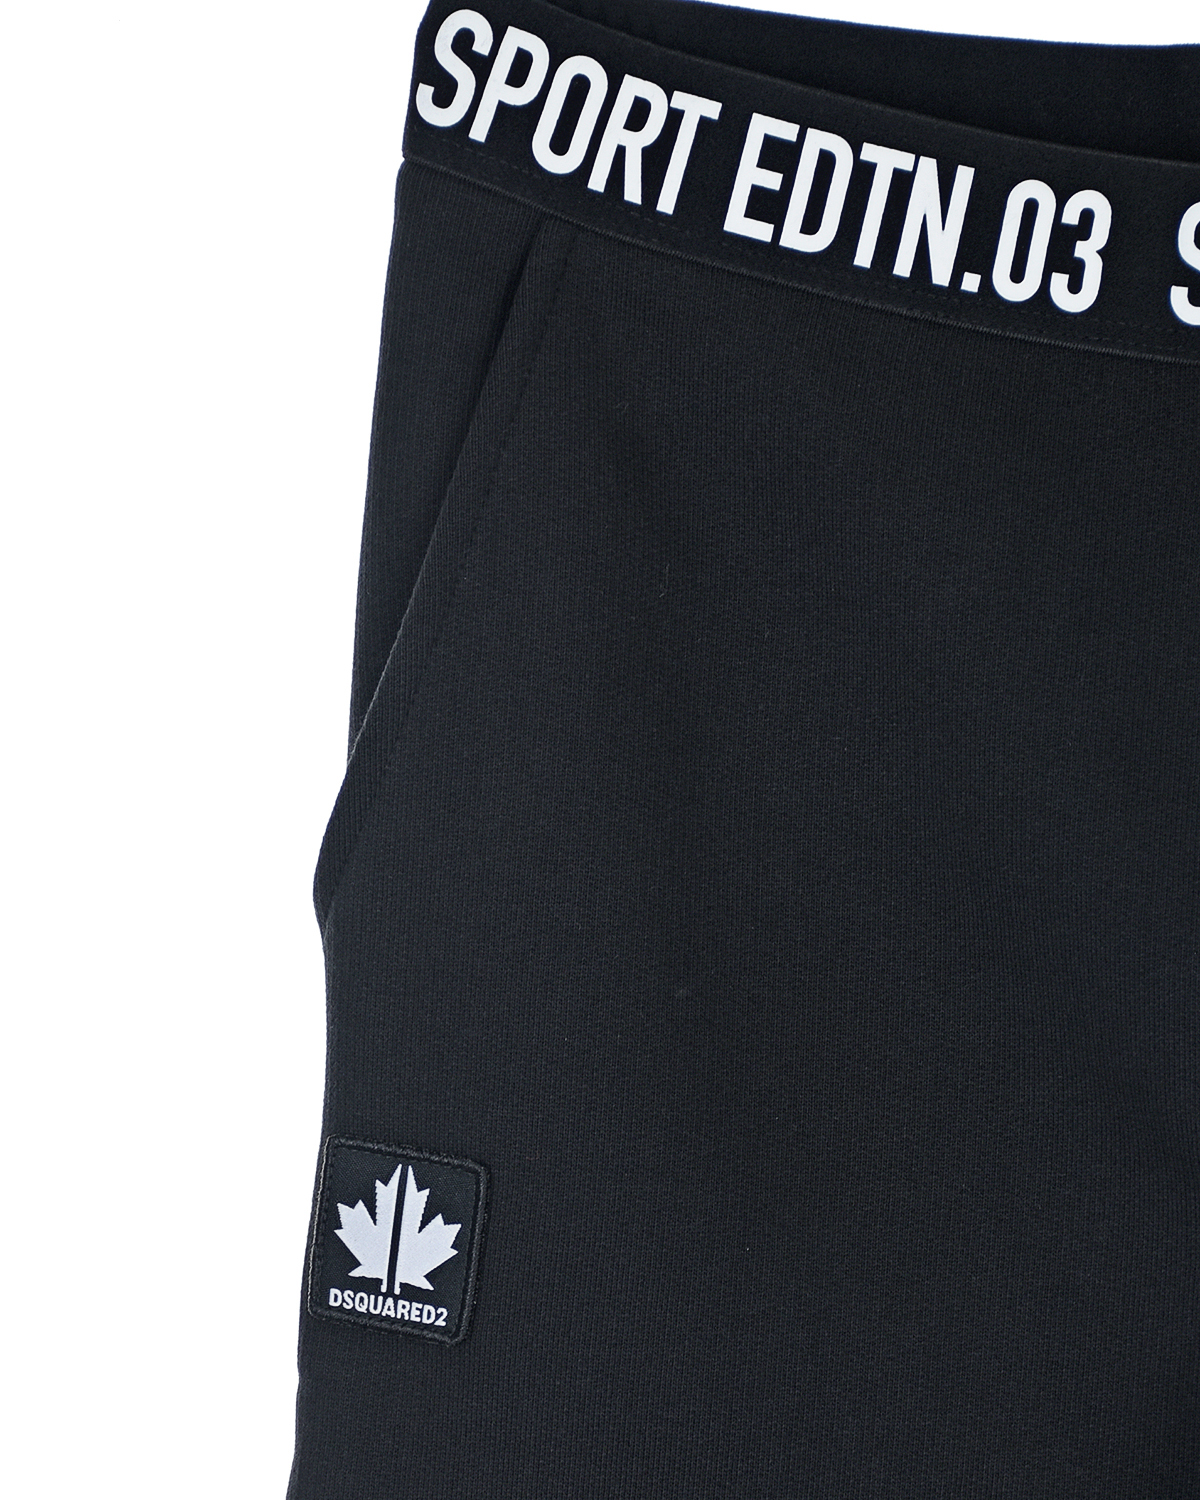 Черные спортивные брюки sport edtn 03 Dsquared2 детские, размер 152, цвет черный - фото 3